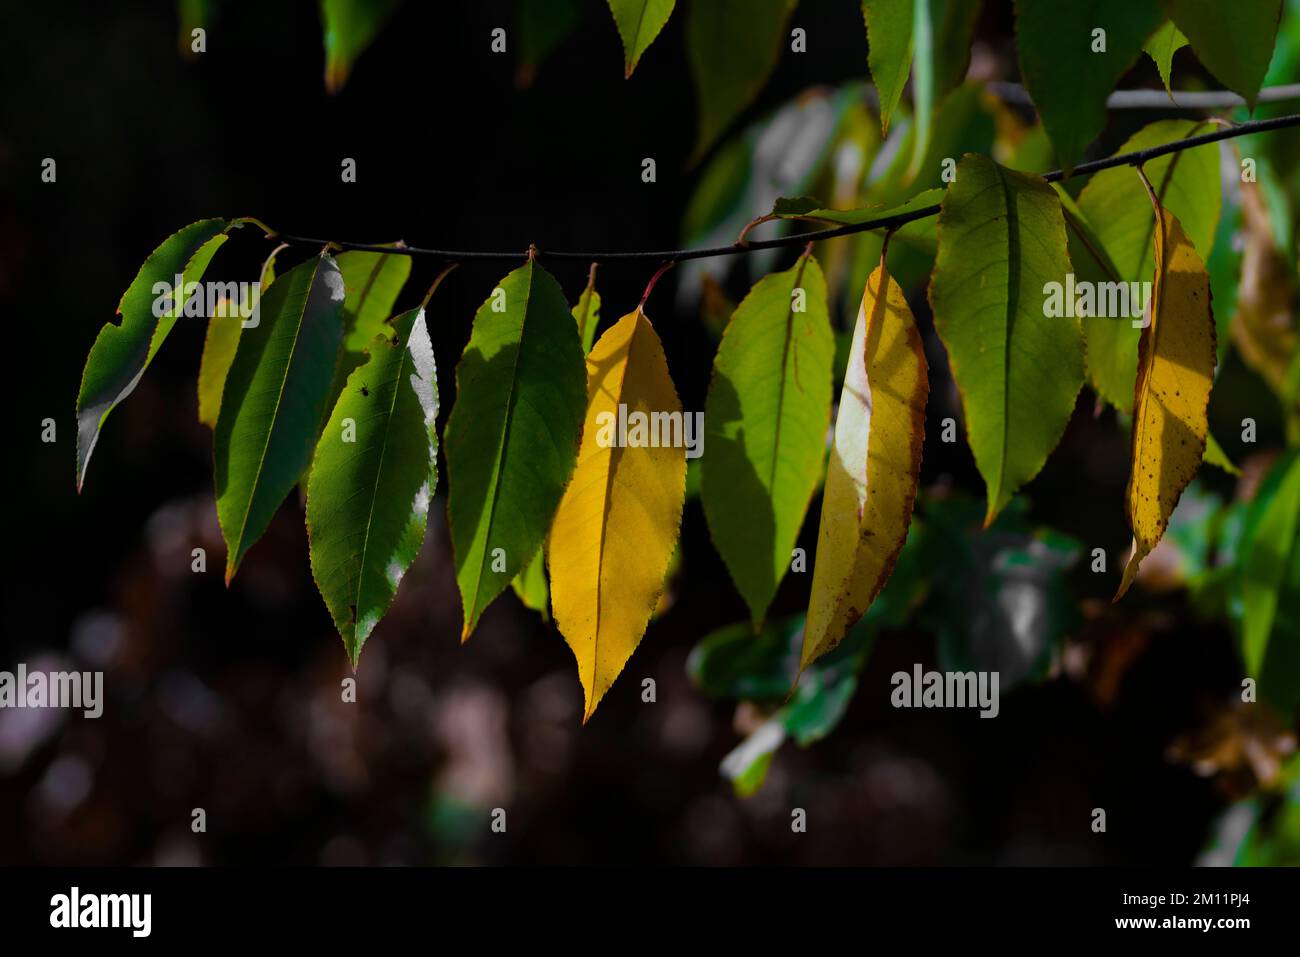 Alcune foglie giallastre in autunno su un albero deciduo, foglie allungate, profondità di campo bassa, bokeh sfocato Foto Stock